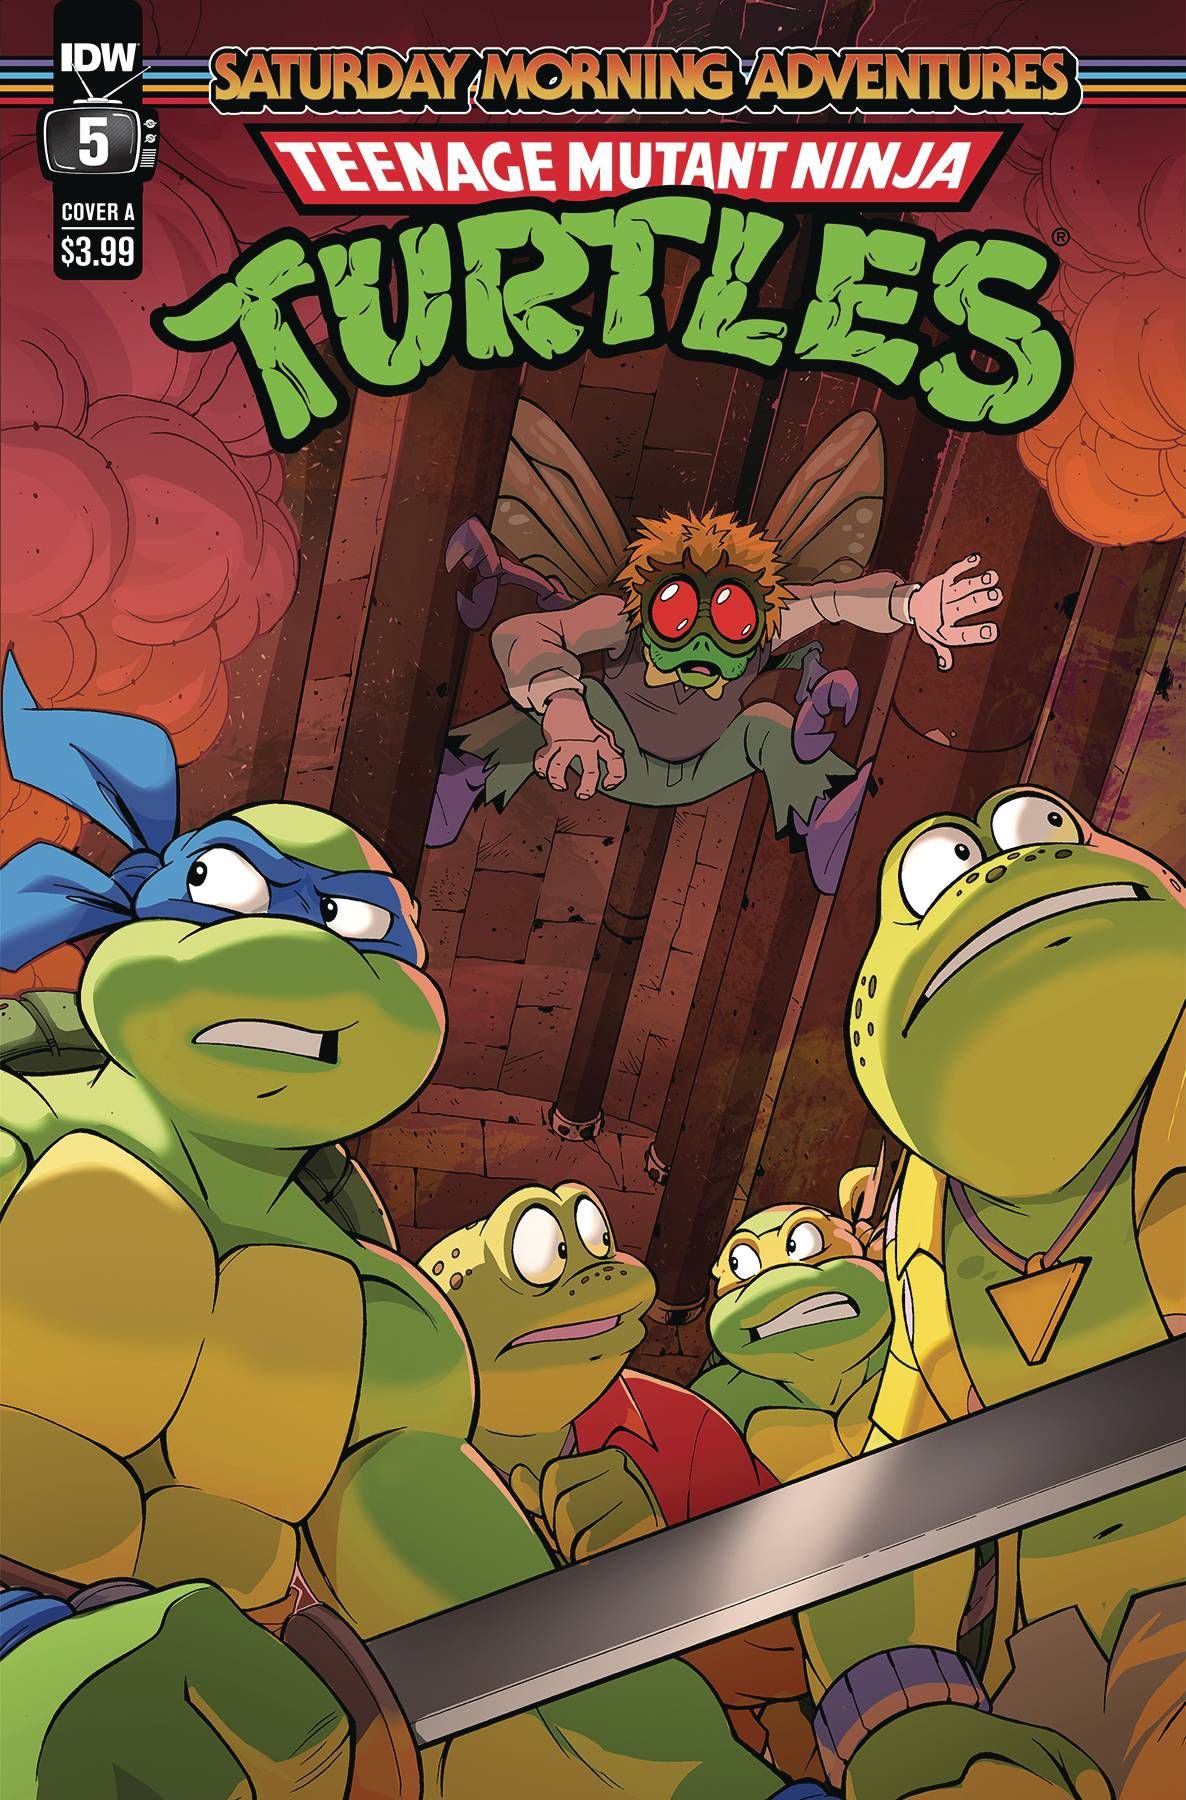 Teenage Mutant Ninja Turtles: Saturday Morning Adventures #5 Comic